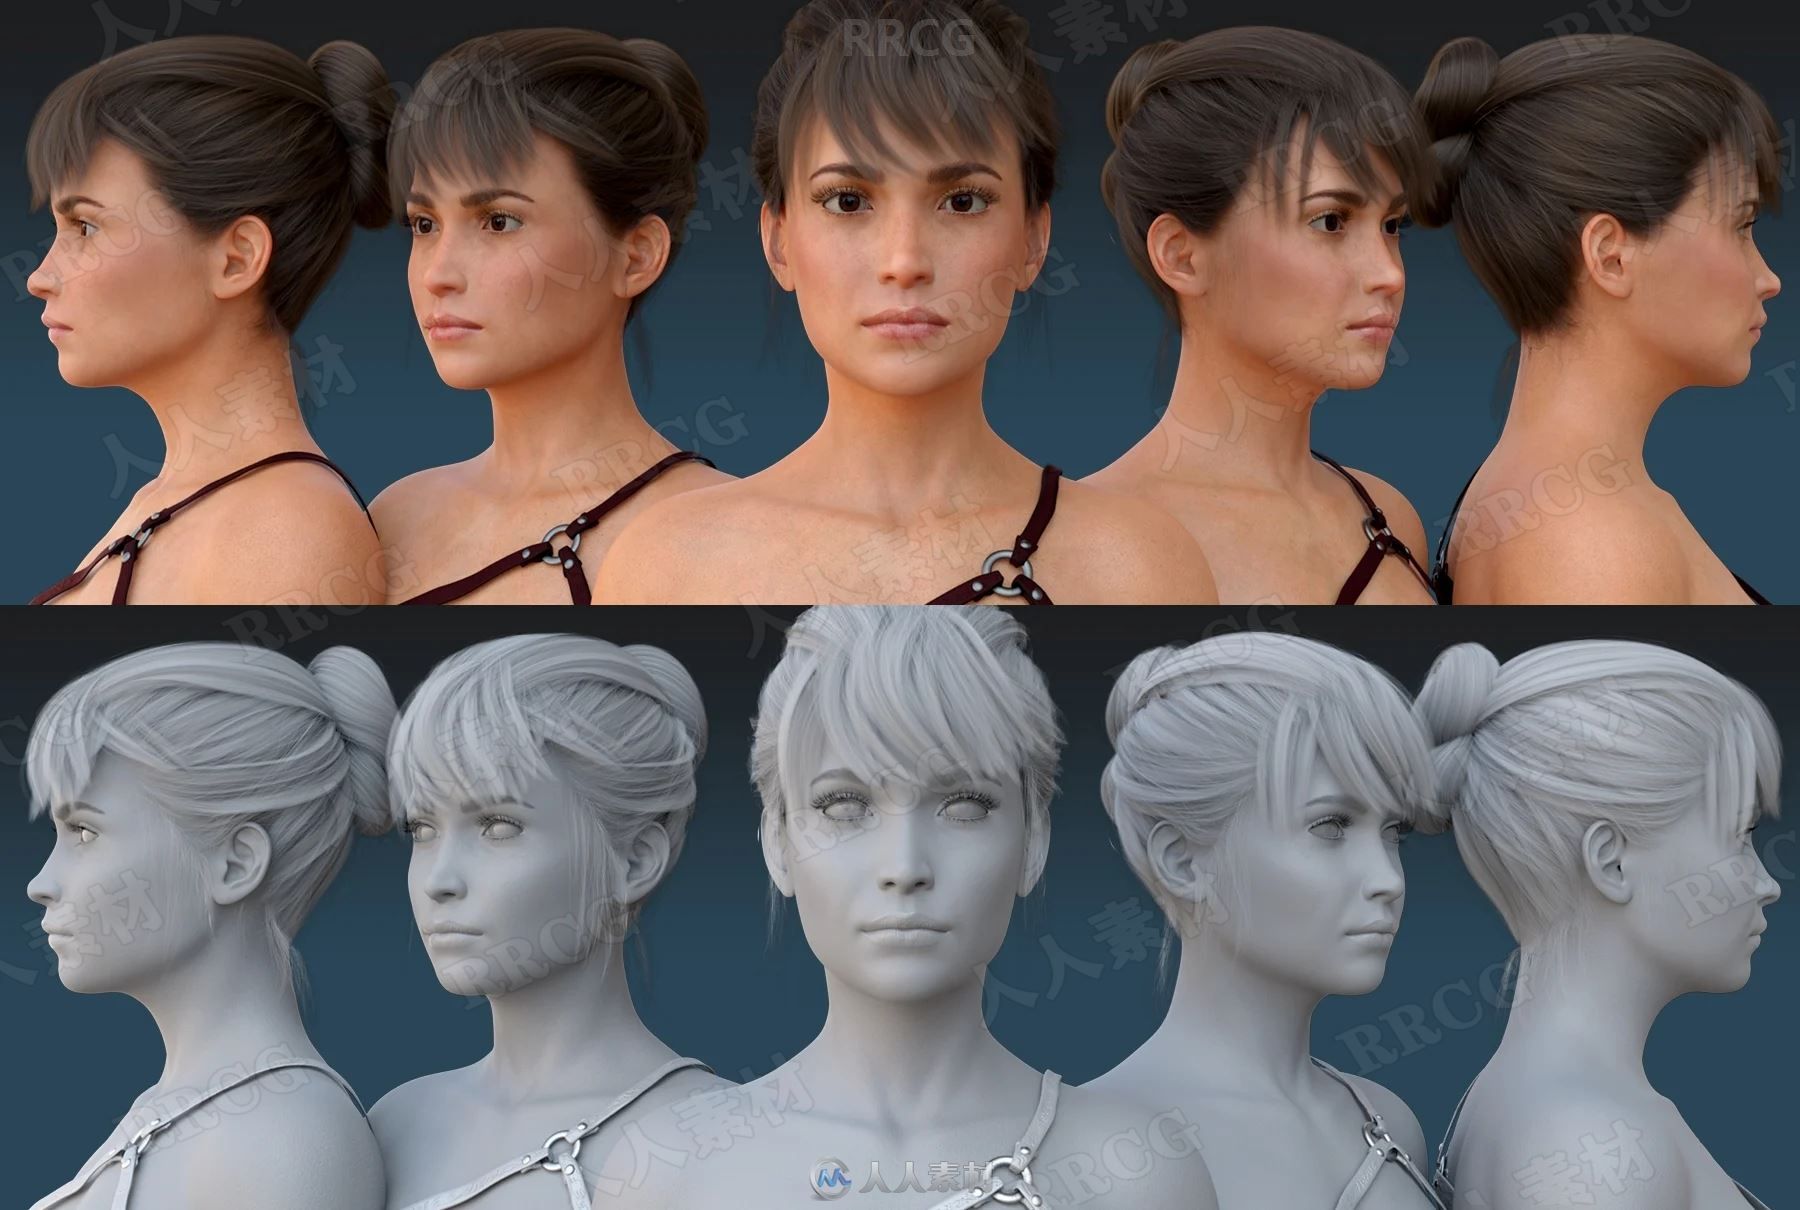 原始脏兮兮战斗女性3D模型合集